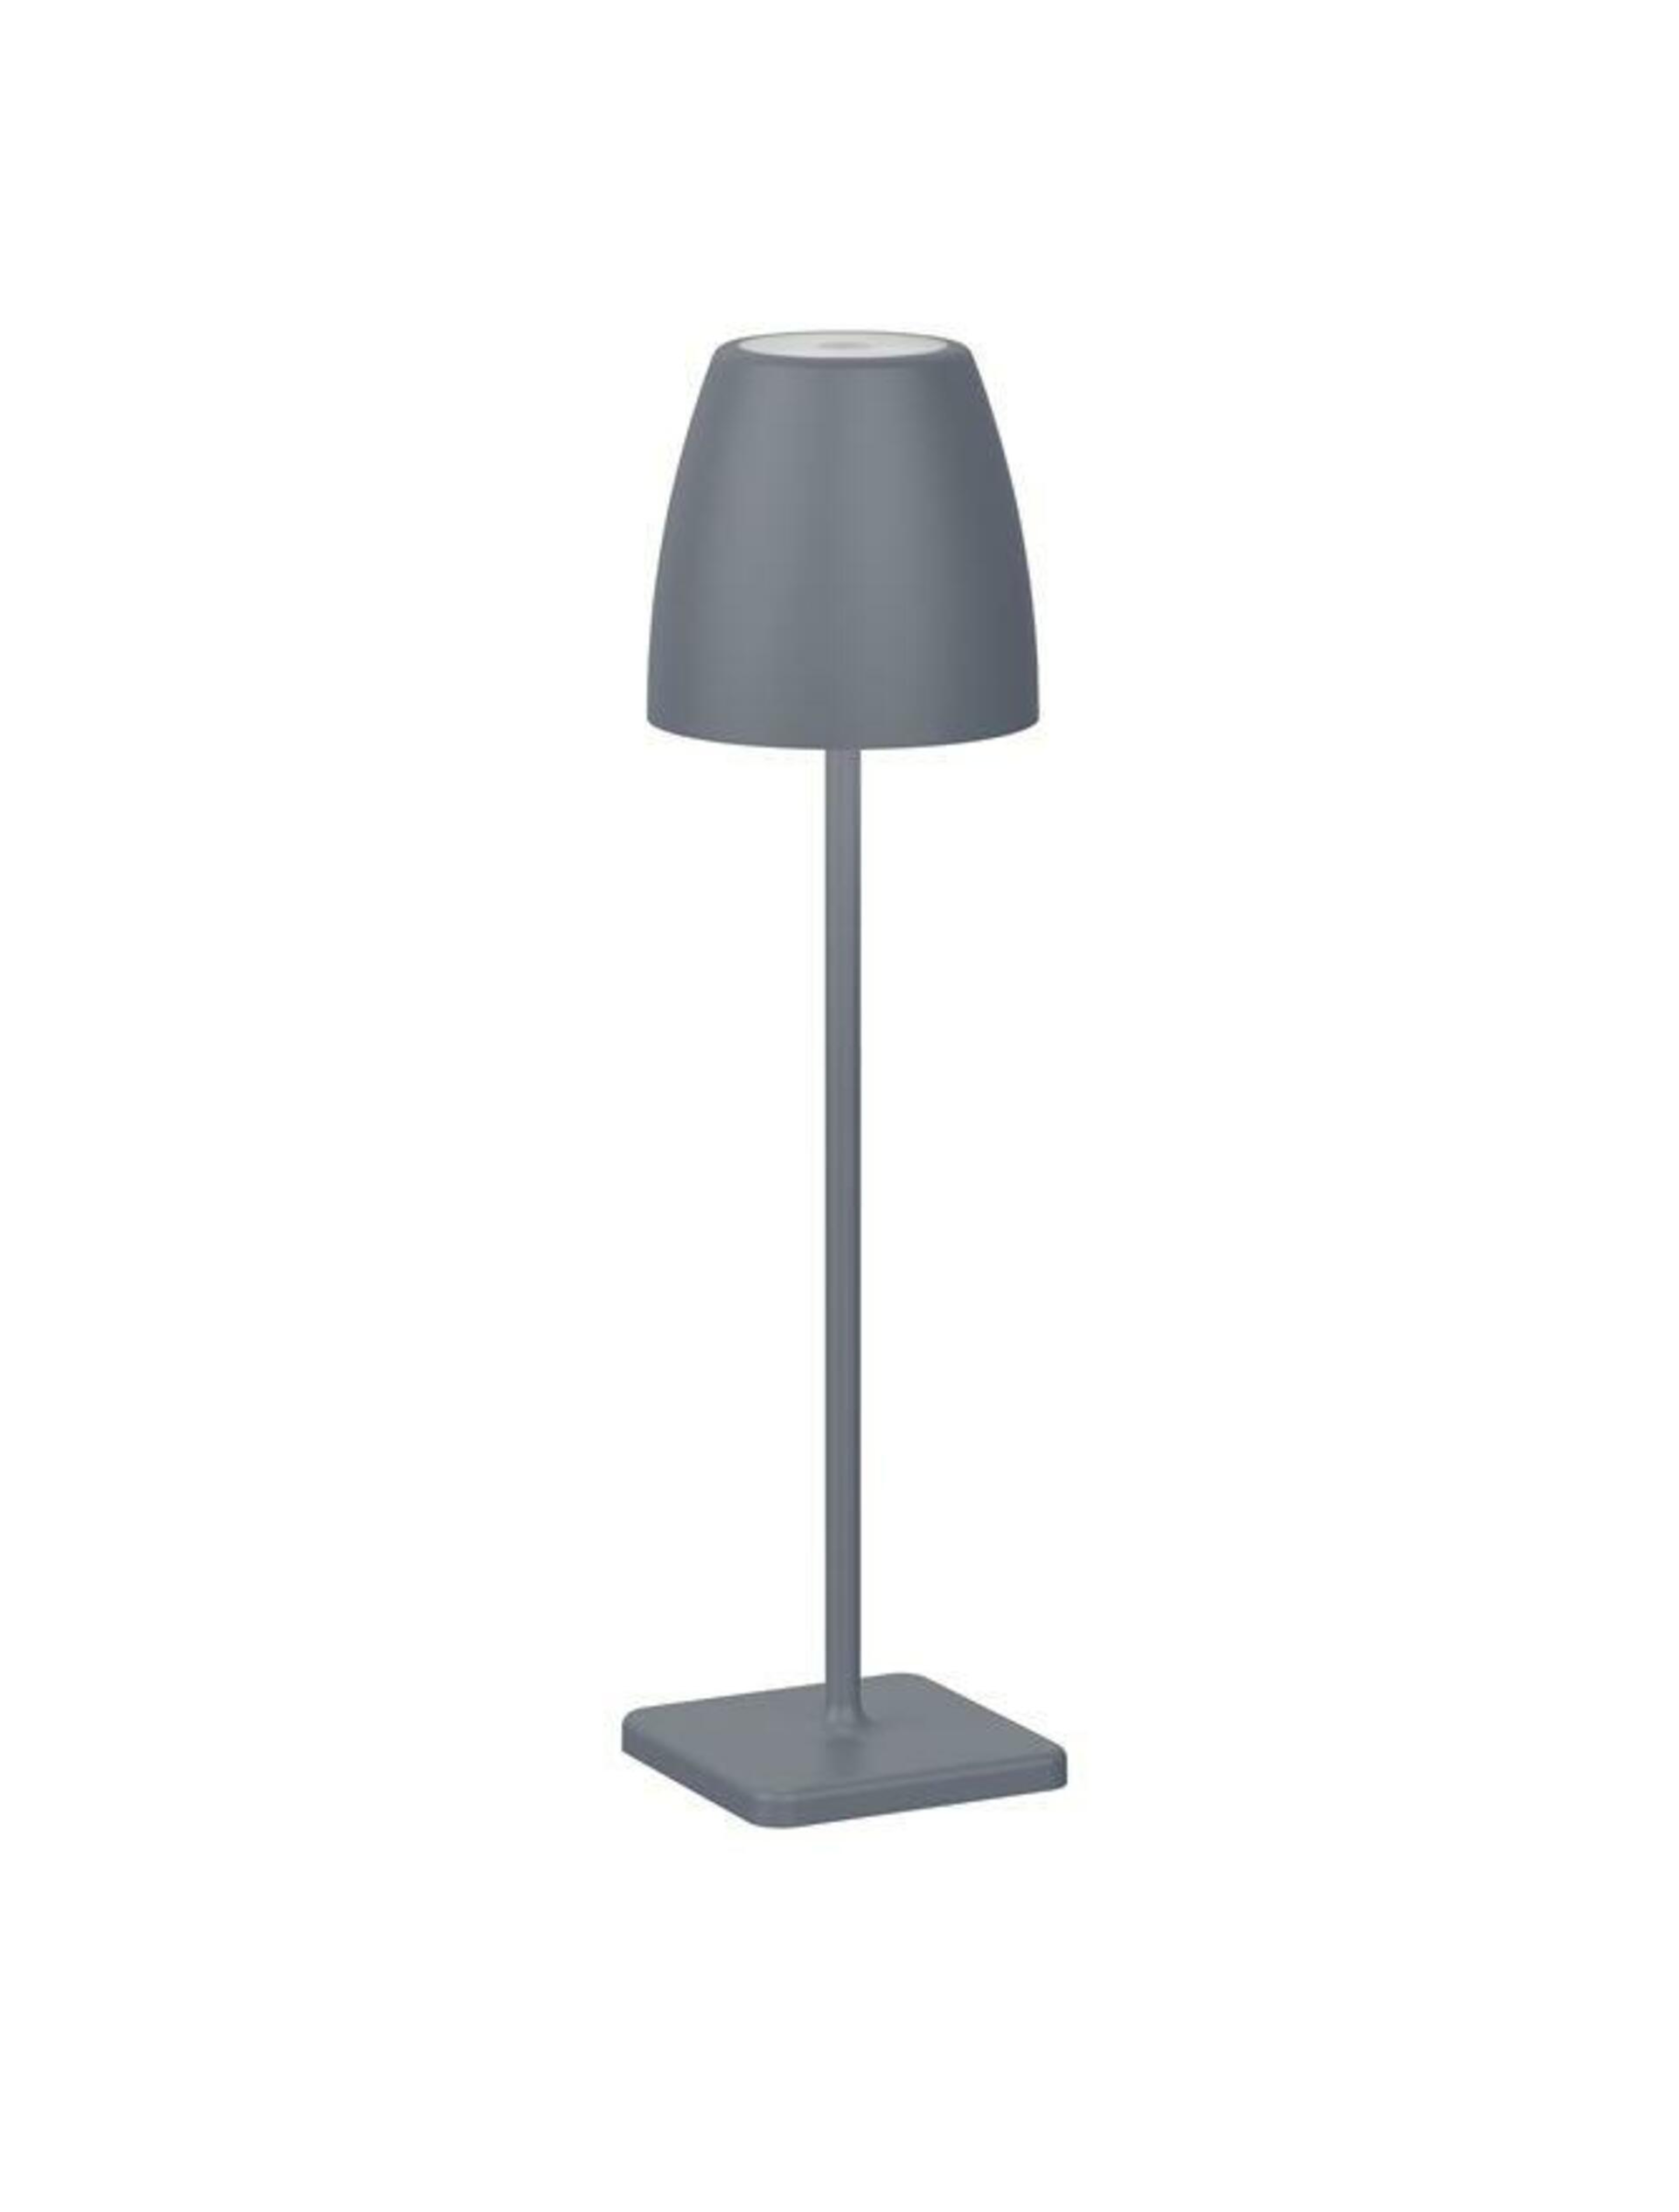 NOVA LUCE venkovní stolní lampa COLT tmavě šedý litý hliník a akryl LED 2W 3000K IP54 62st. 5V DC vypínač na těle USB kabel stmívatelné 9223997